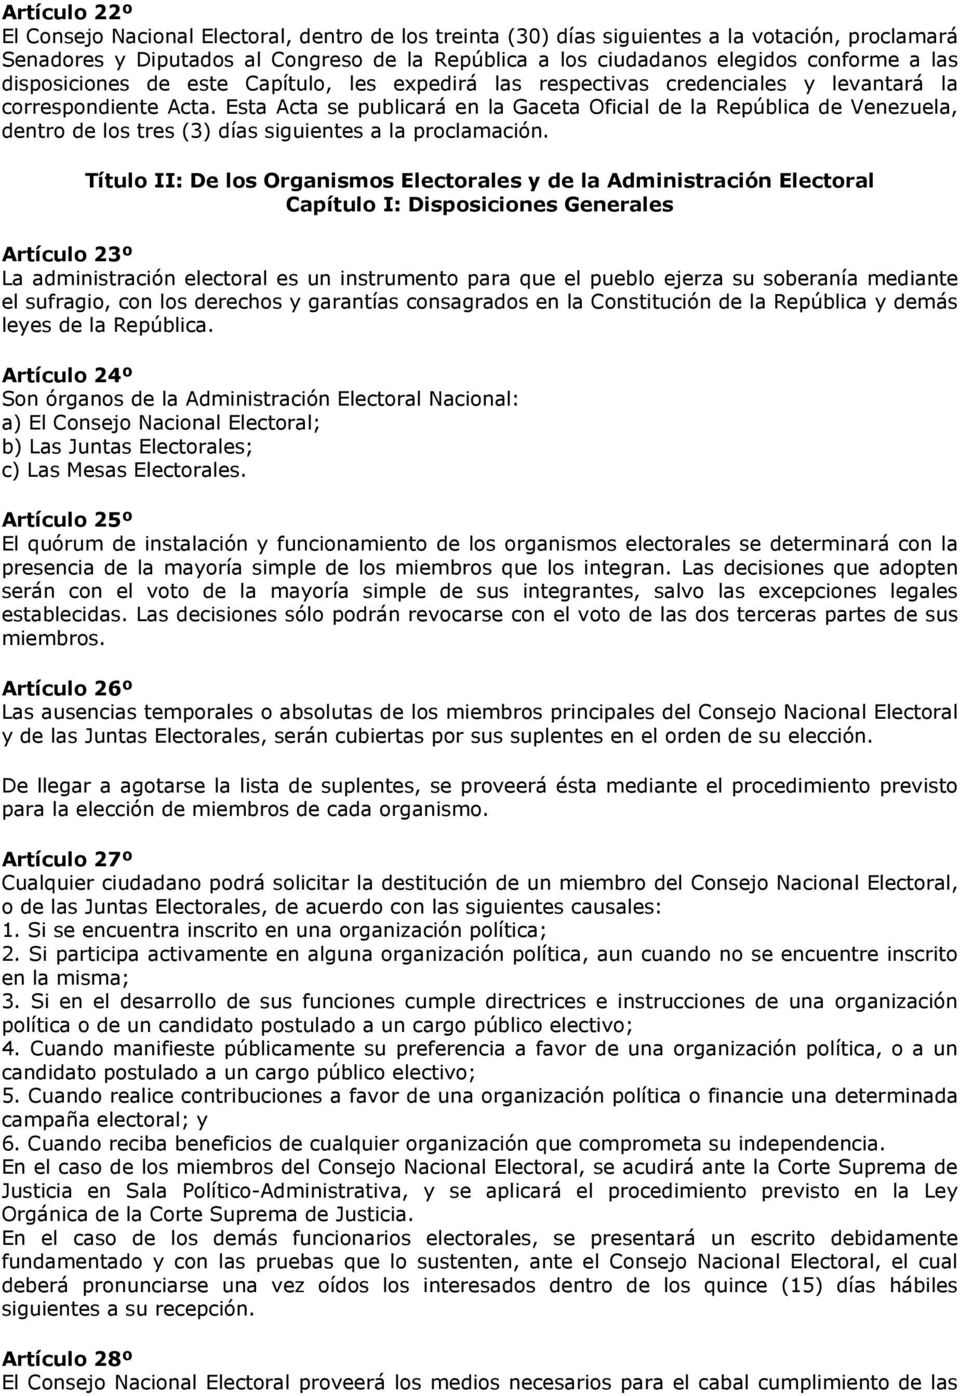 Esta Acta se publicará en la Gaceta Oficial de la República de Venezuela, dentro de los tres (3) días siguientes a la proclamación.